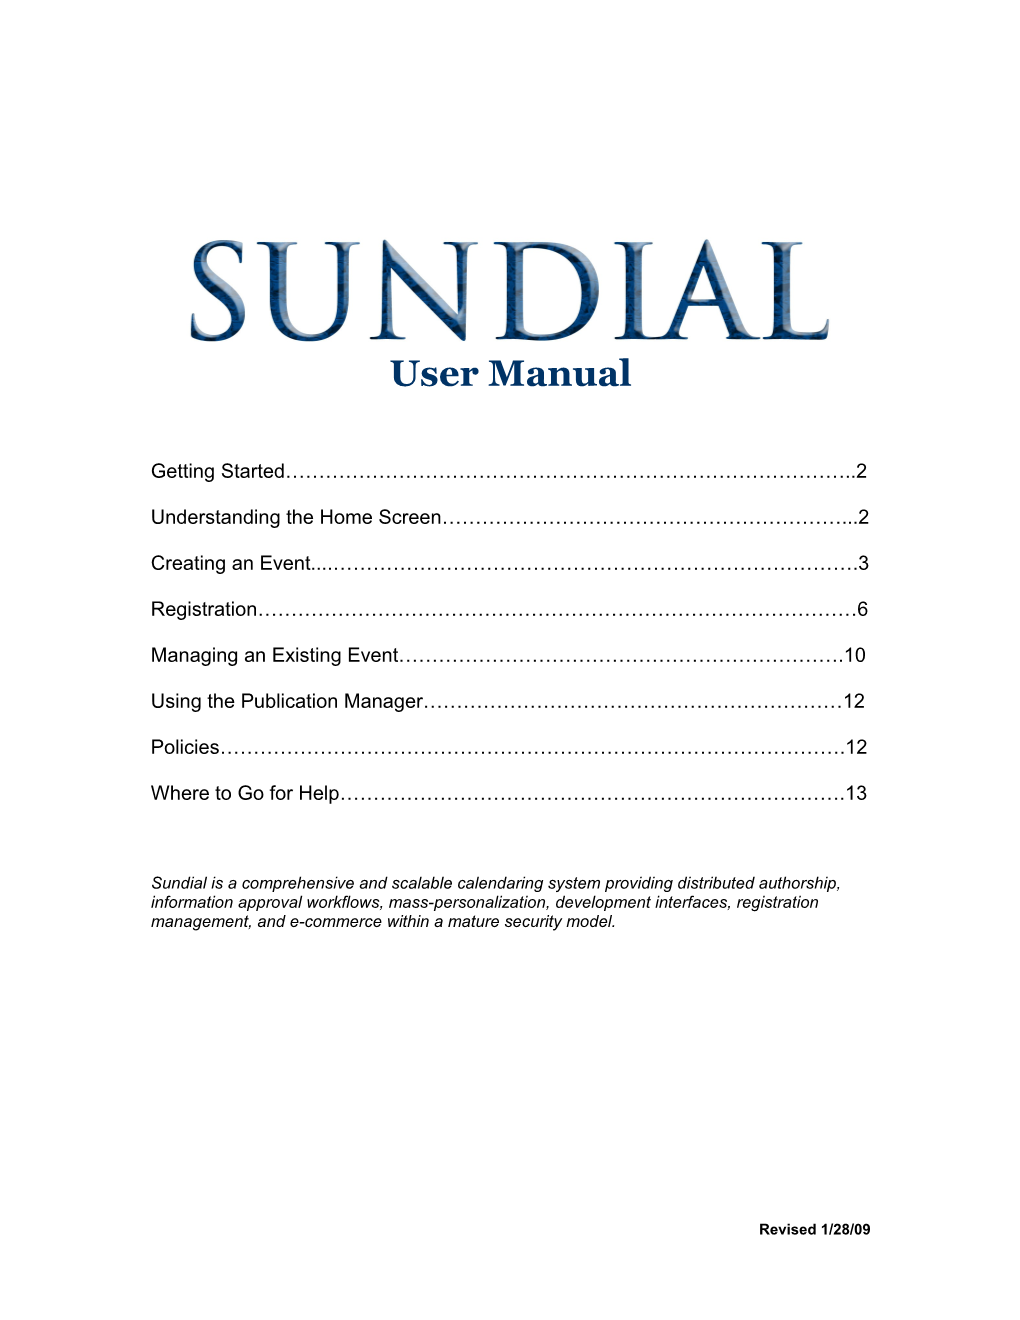 Sundial Training Sheet for Student Groups